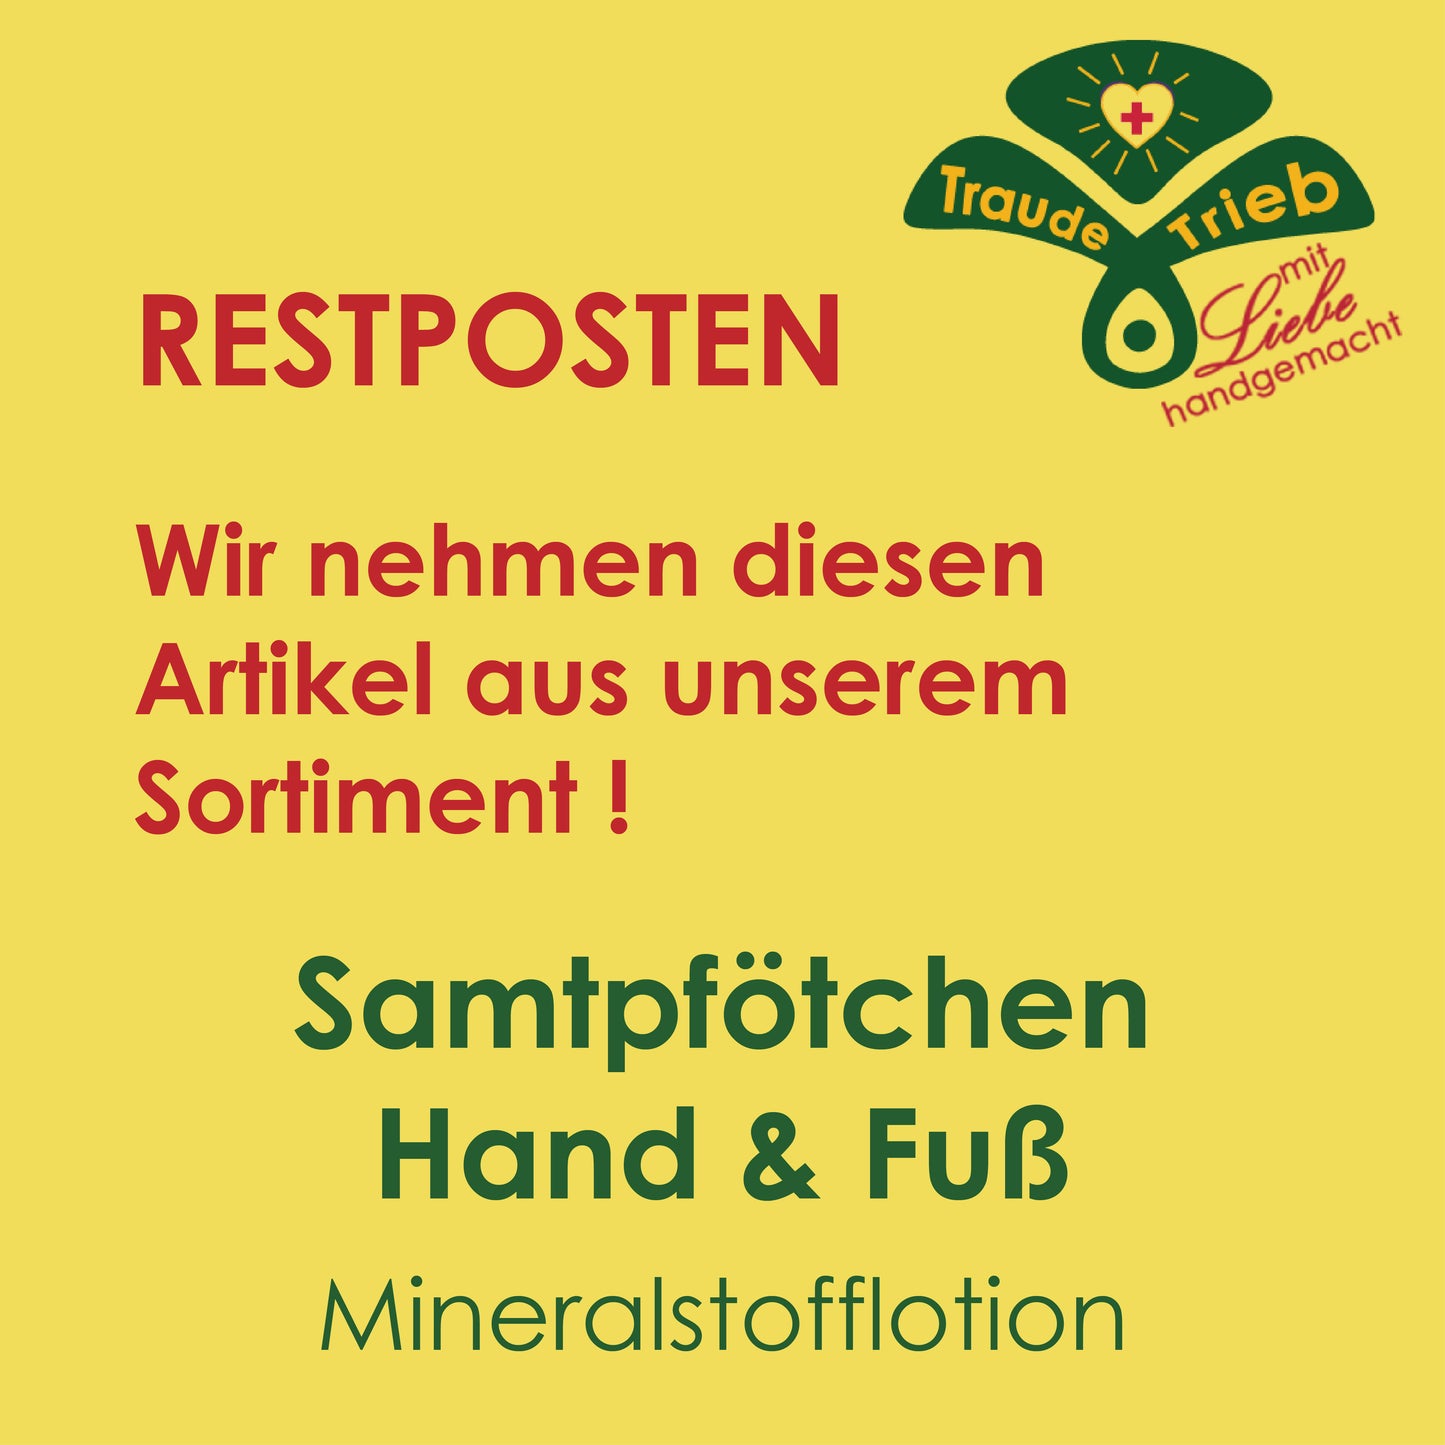 RESTPOSTEN Samtpfötchen Hand & Fuß Mineralstofflotion